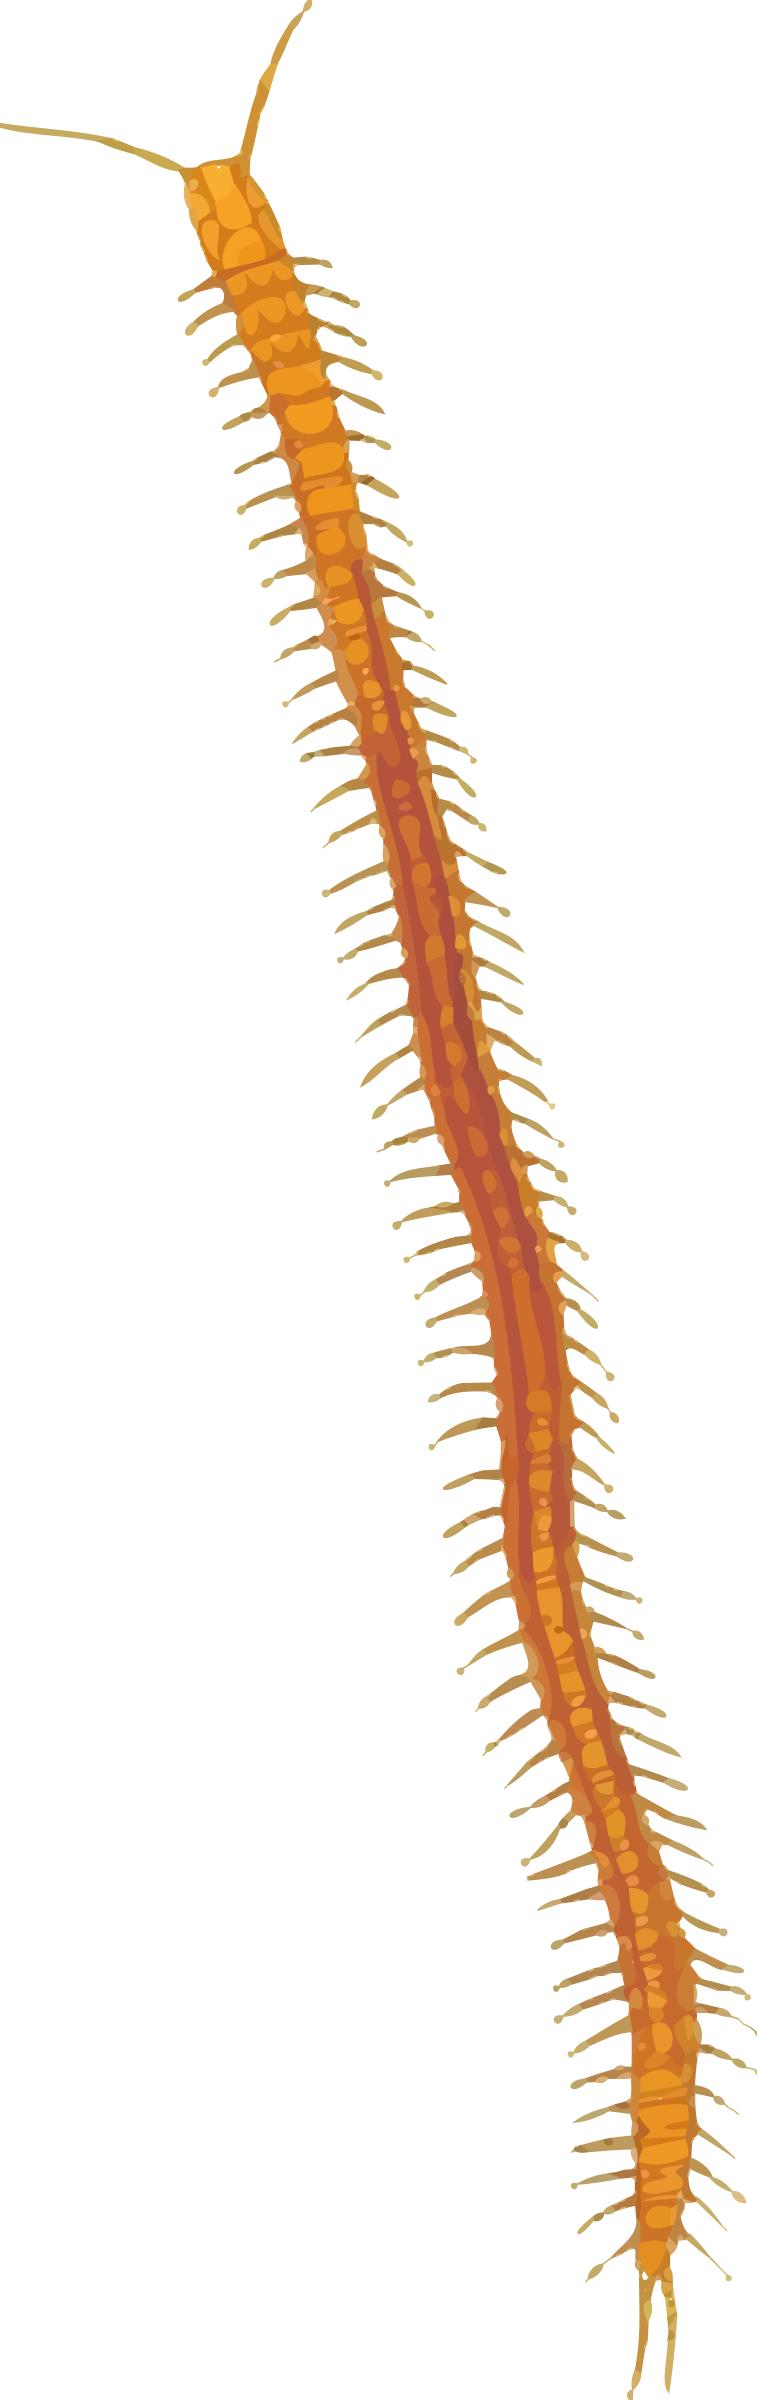 Centipede 2 png